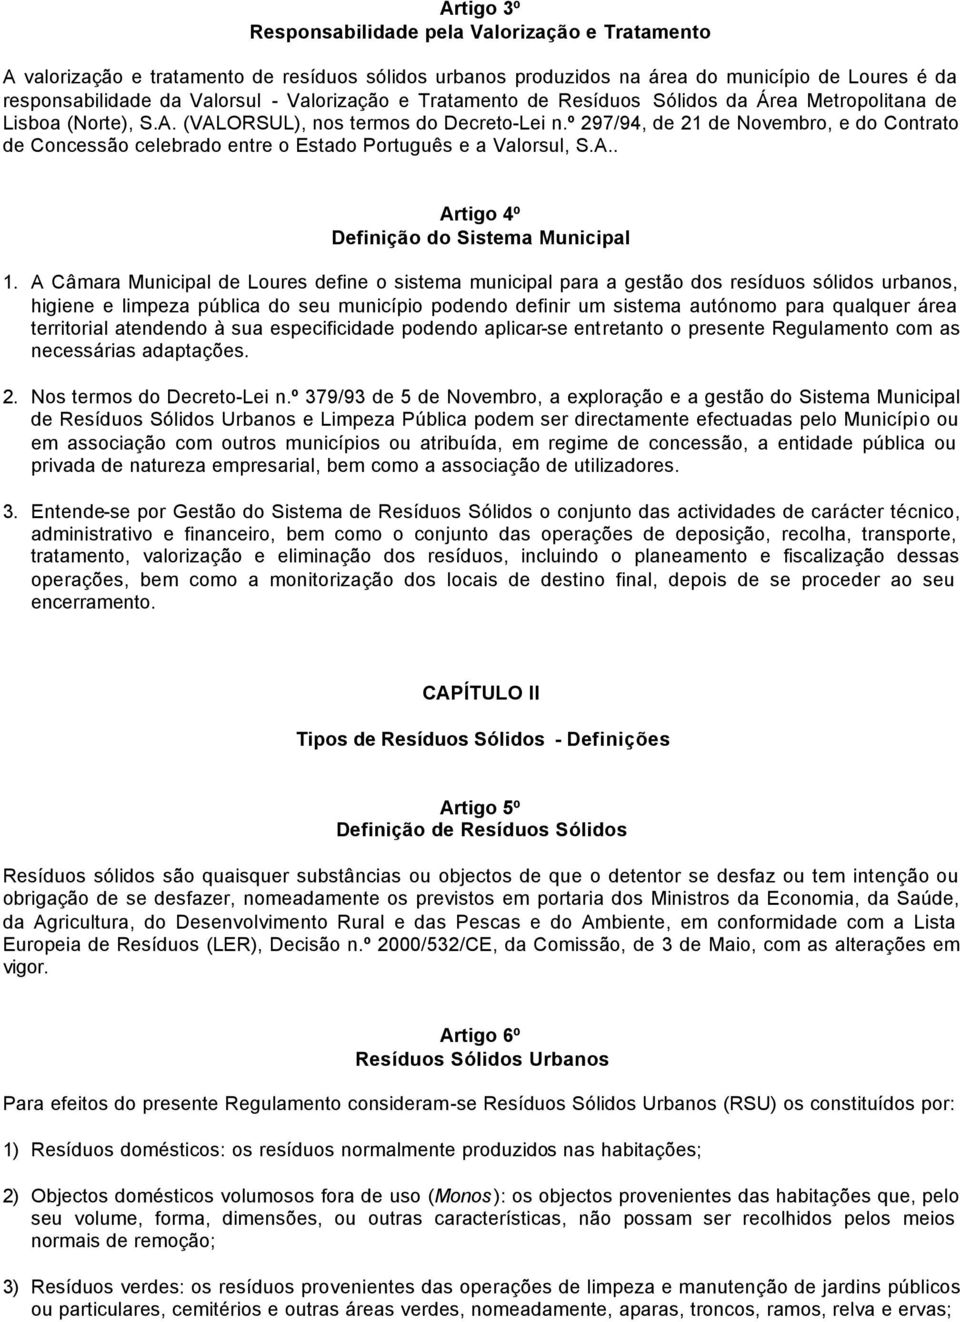 REGULAMENTO DE RESÍDUOS SÓLIDOS E LIMPEZA PÚBLICA - PDF Free Download